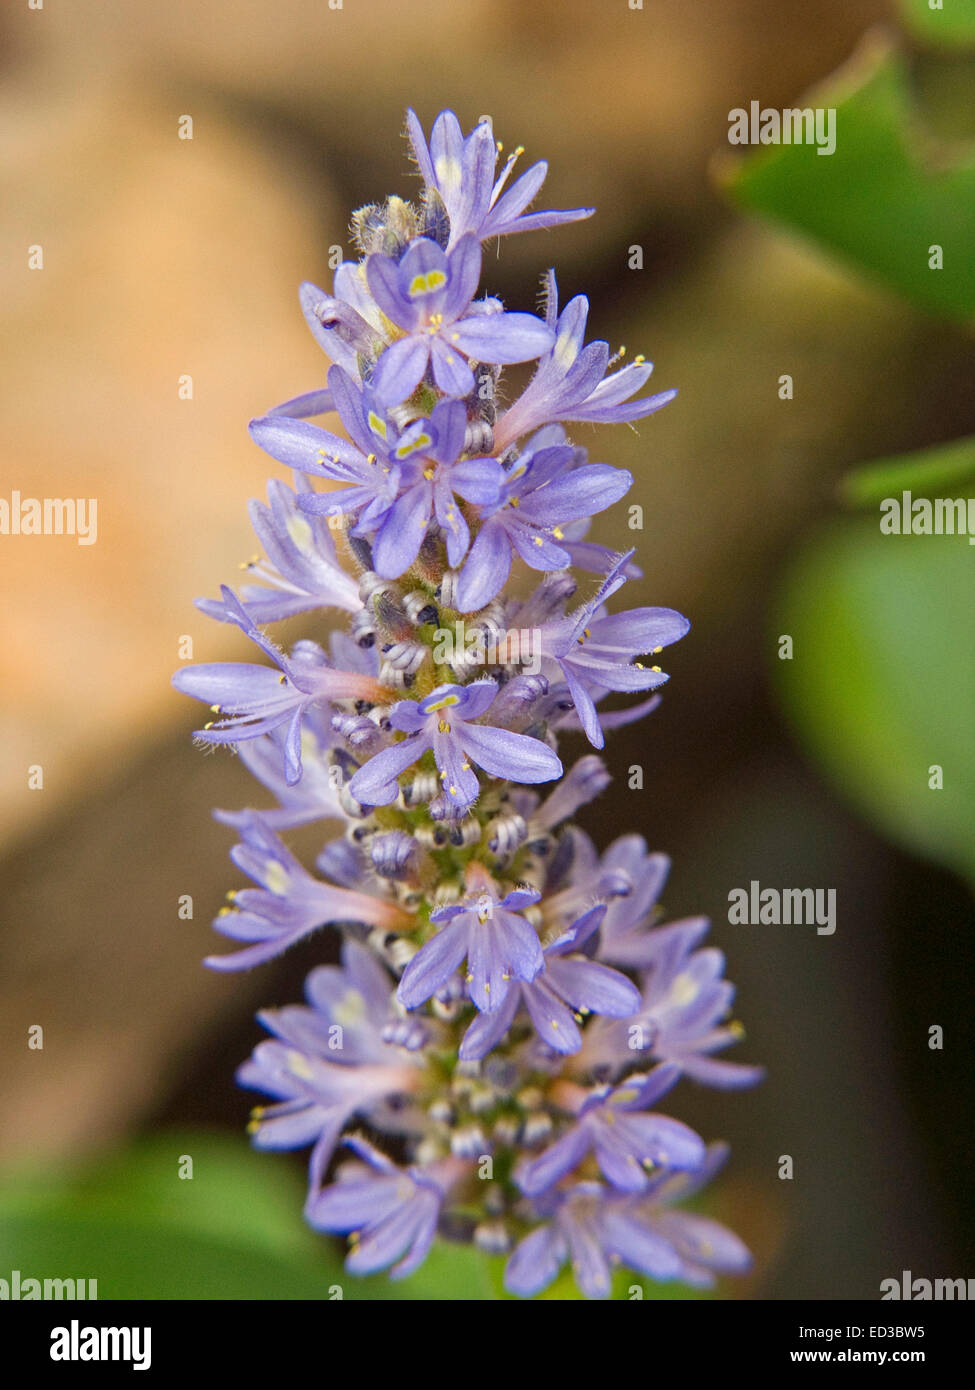 Nahaufnahme des hohen Spike von attraktiven blauen Blüten der Wasserpflanze, Pontederia Cordata, Unkraut Hecht vor grünem Hintergrund Stockfoto